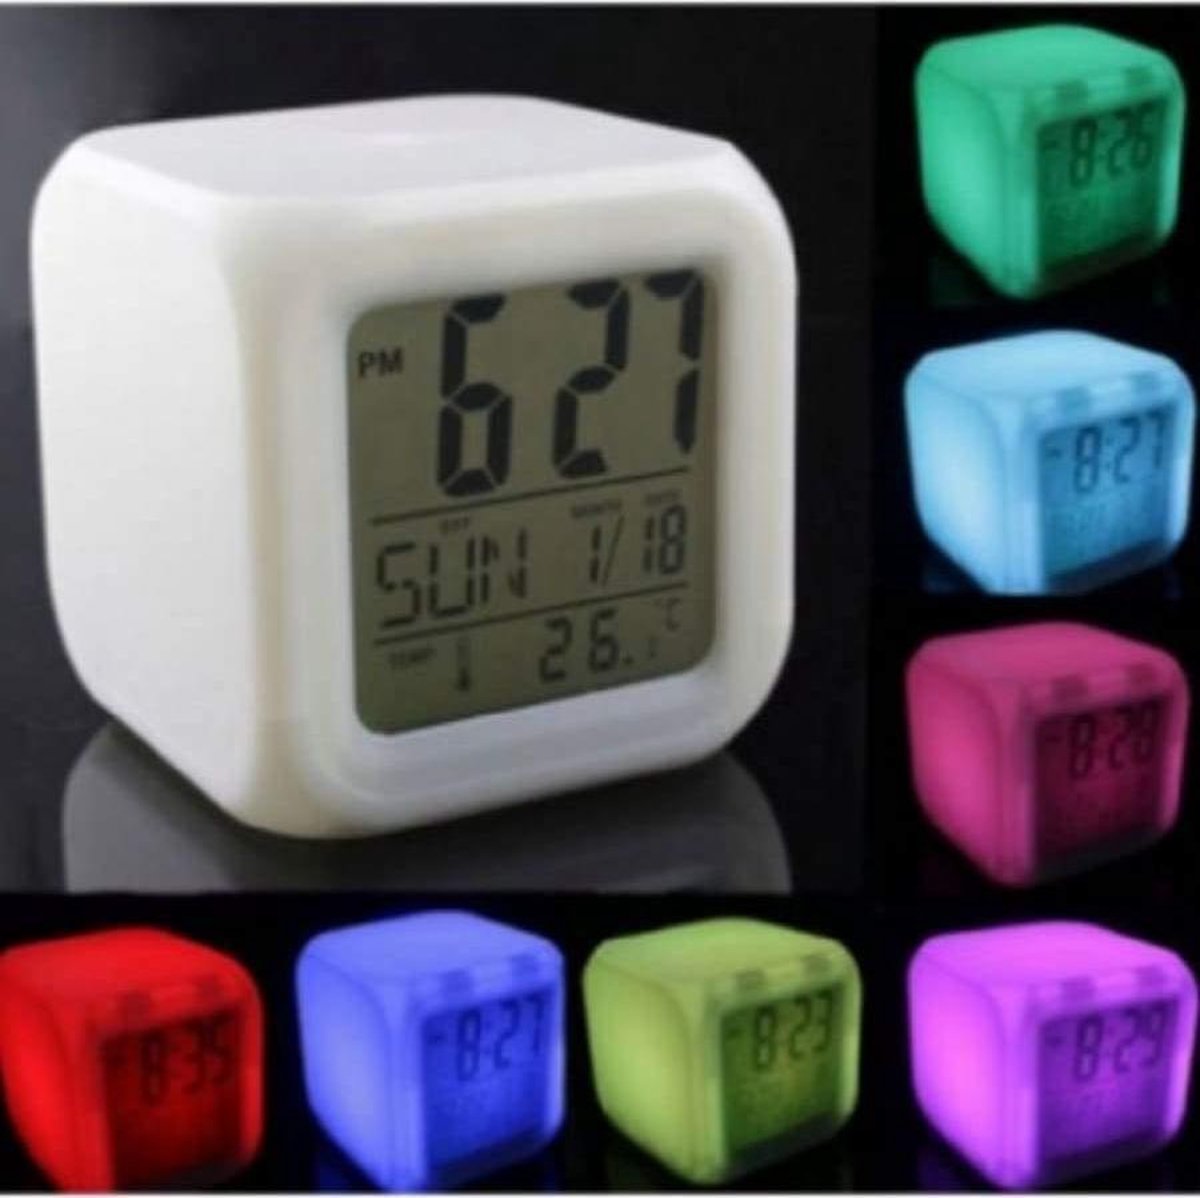 2X Klok met led verlichting - Wekker - Thermometer - Kalender - Klokje staand - Wekker